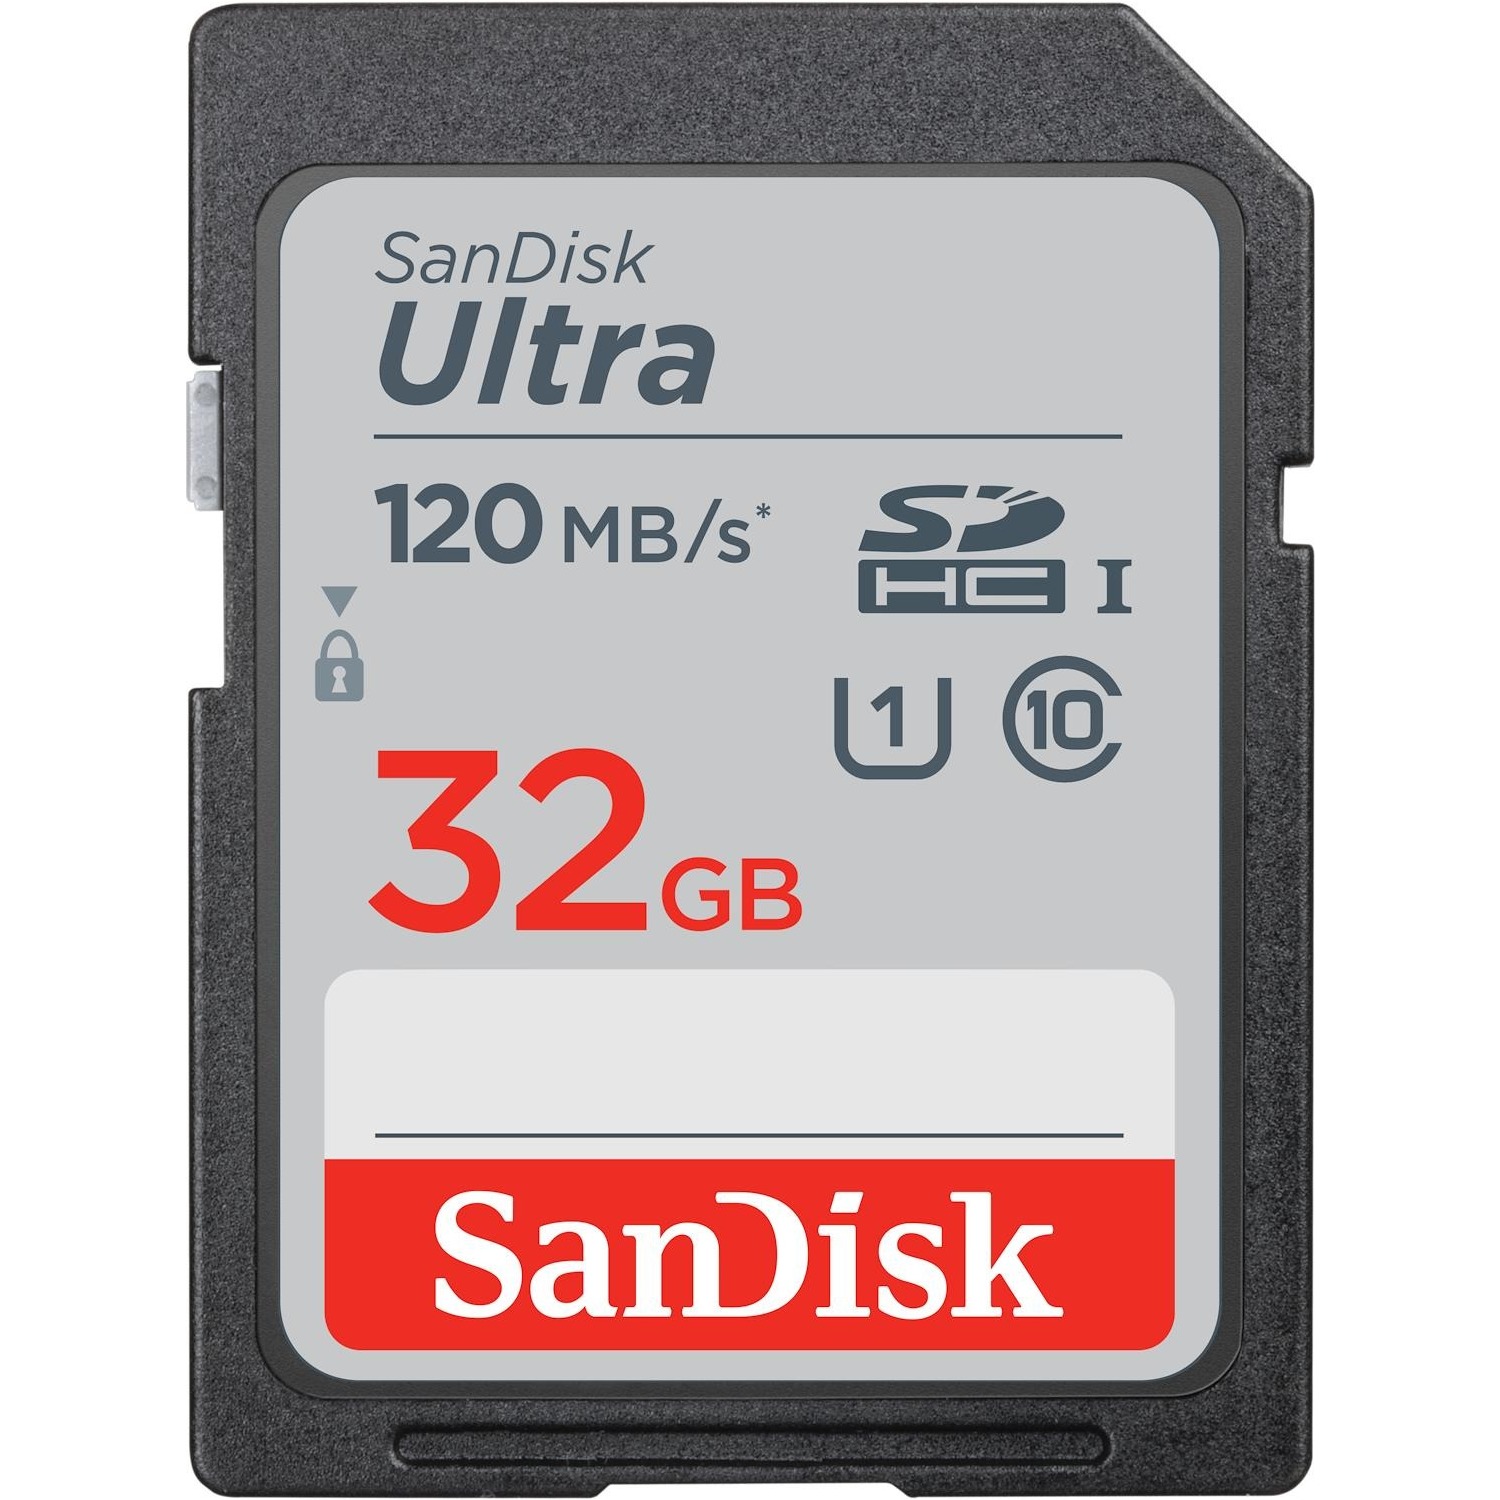 Immagine per SD San Disk 32 GB Extreme da DIMOStore